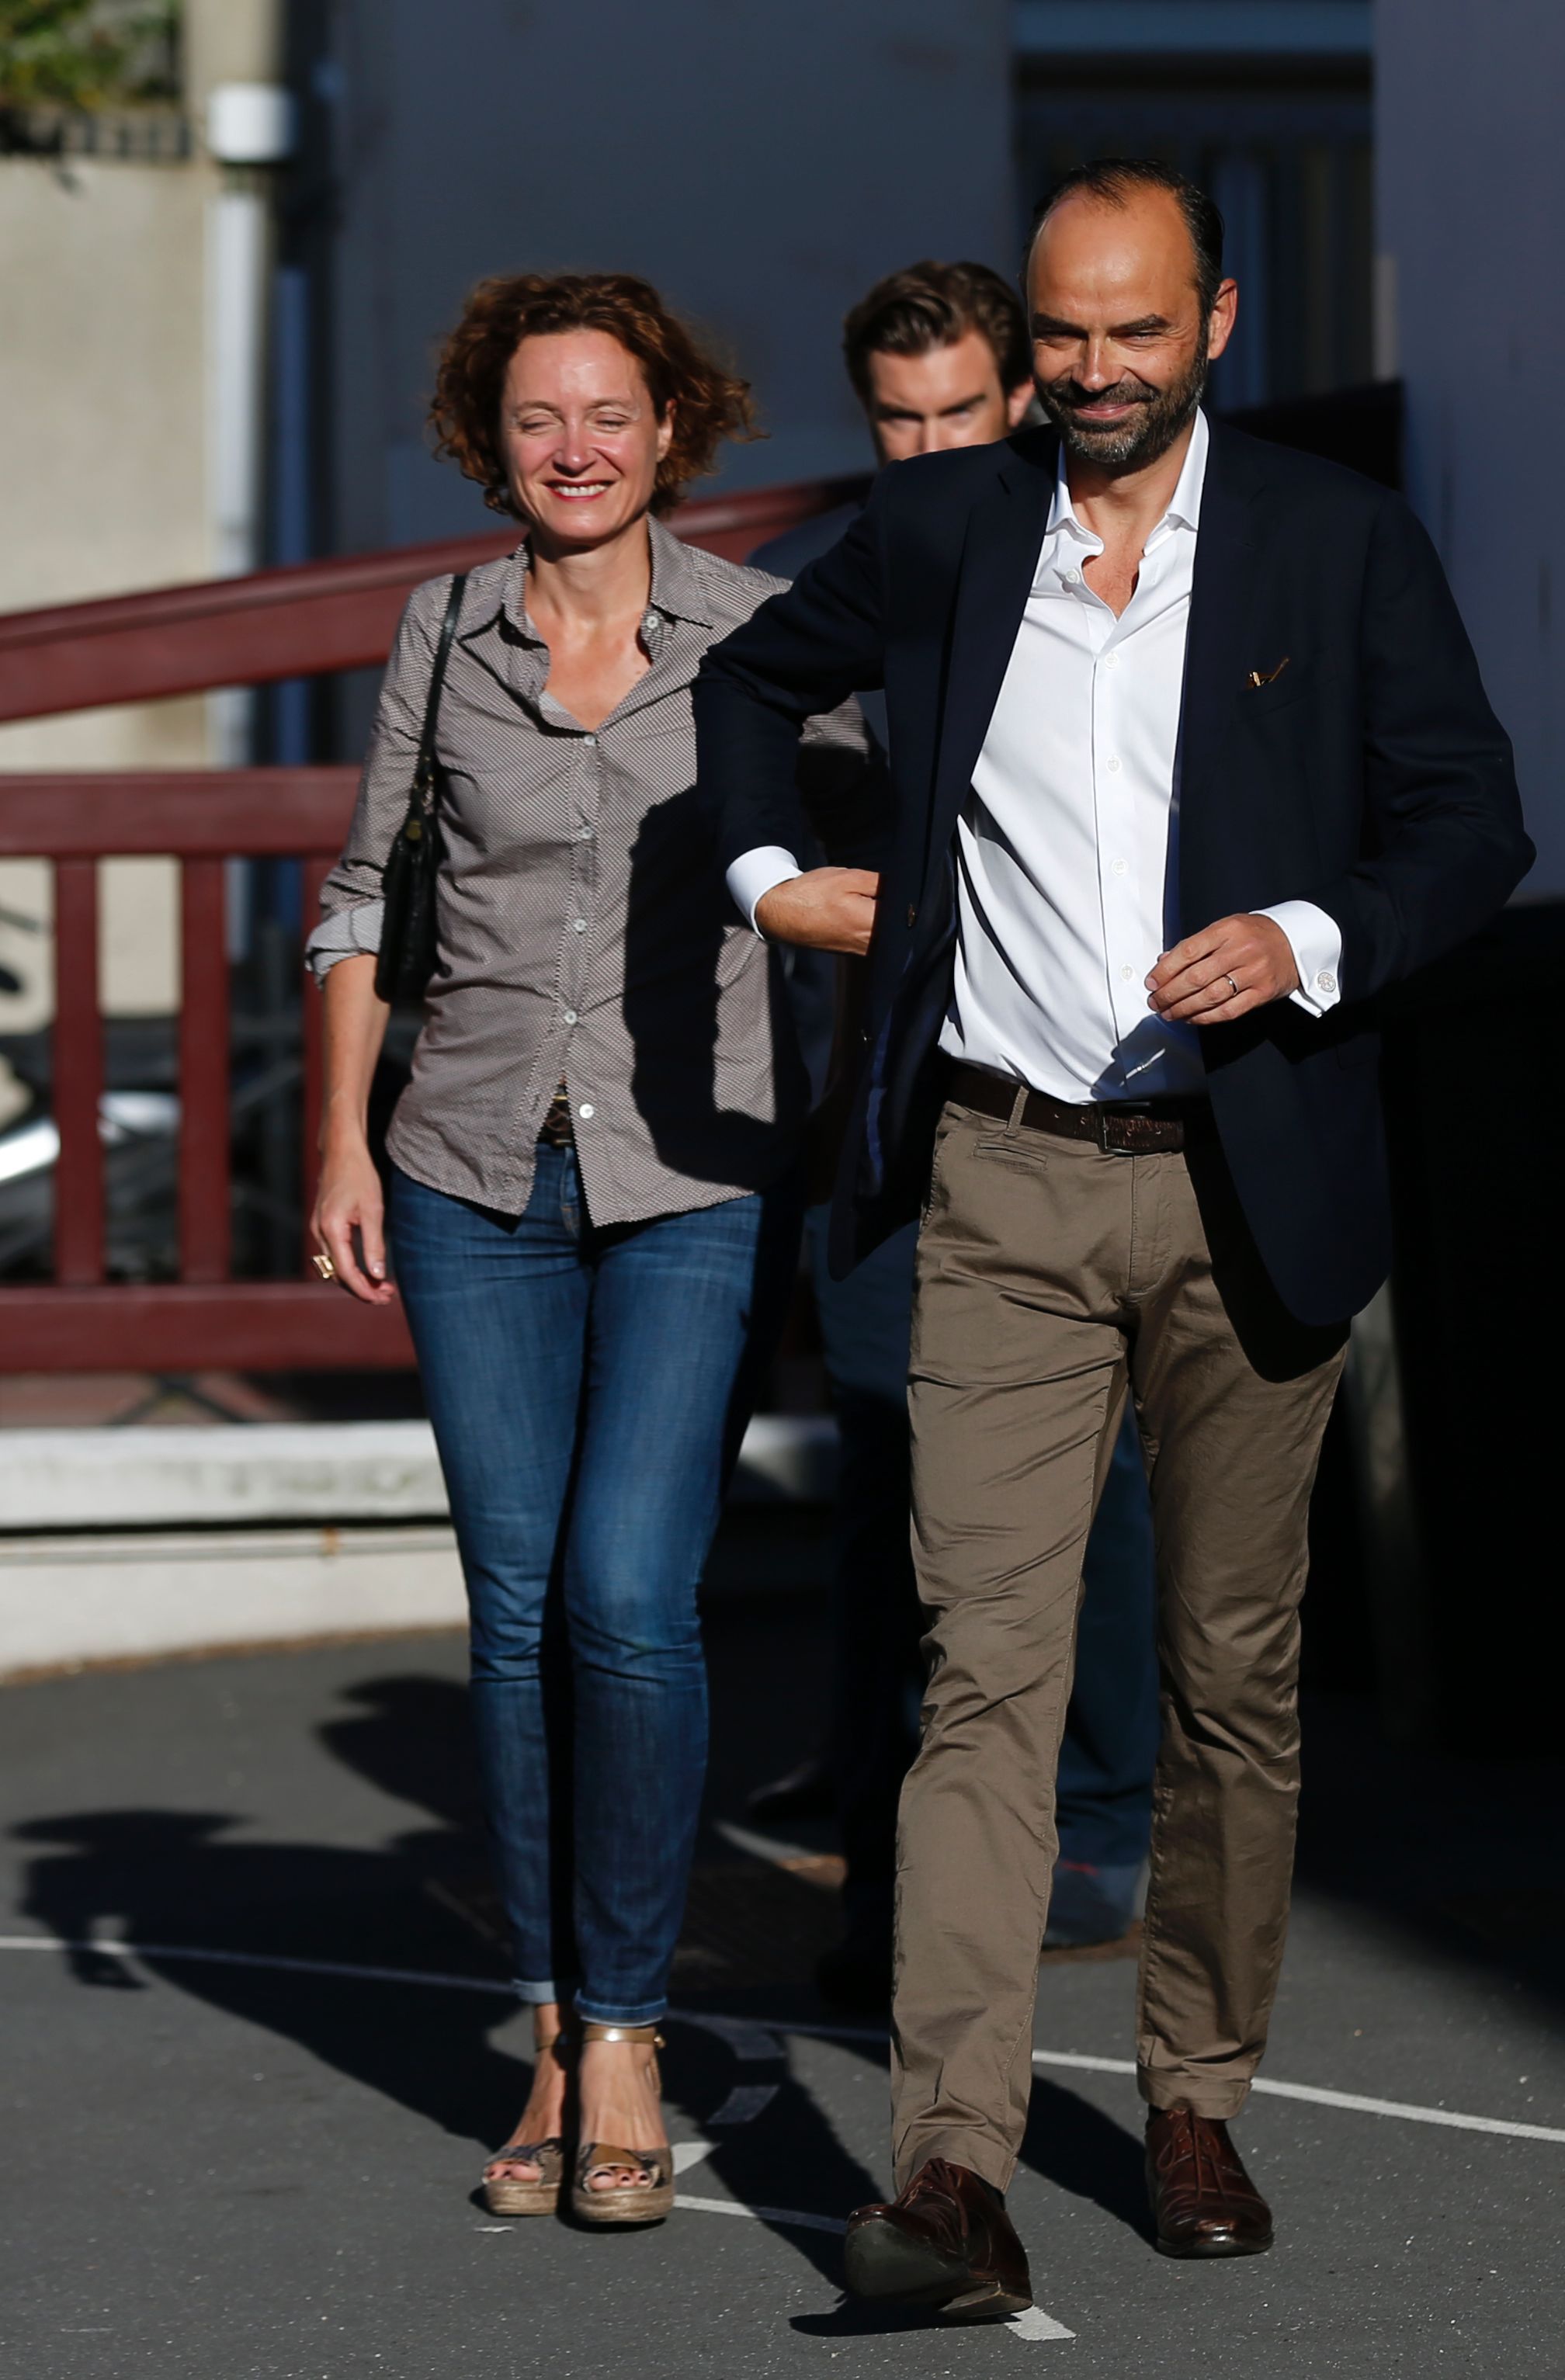 رئيس وزراء فرنسا برفقة زوجته فى لجنة الاقتراع